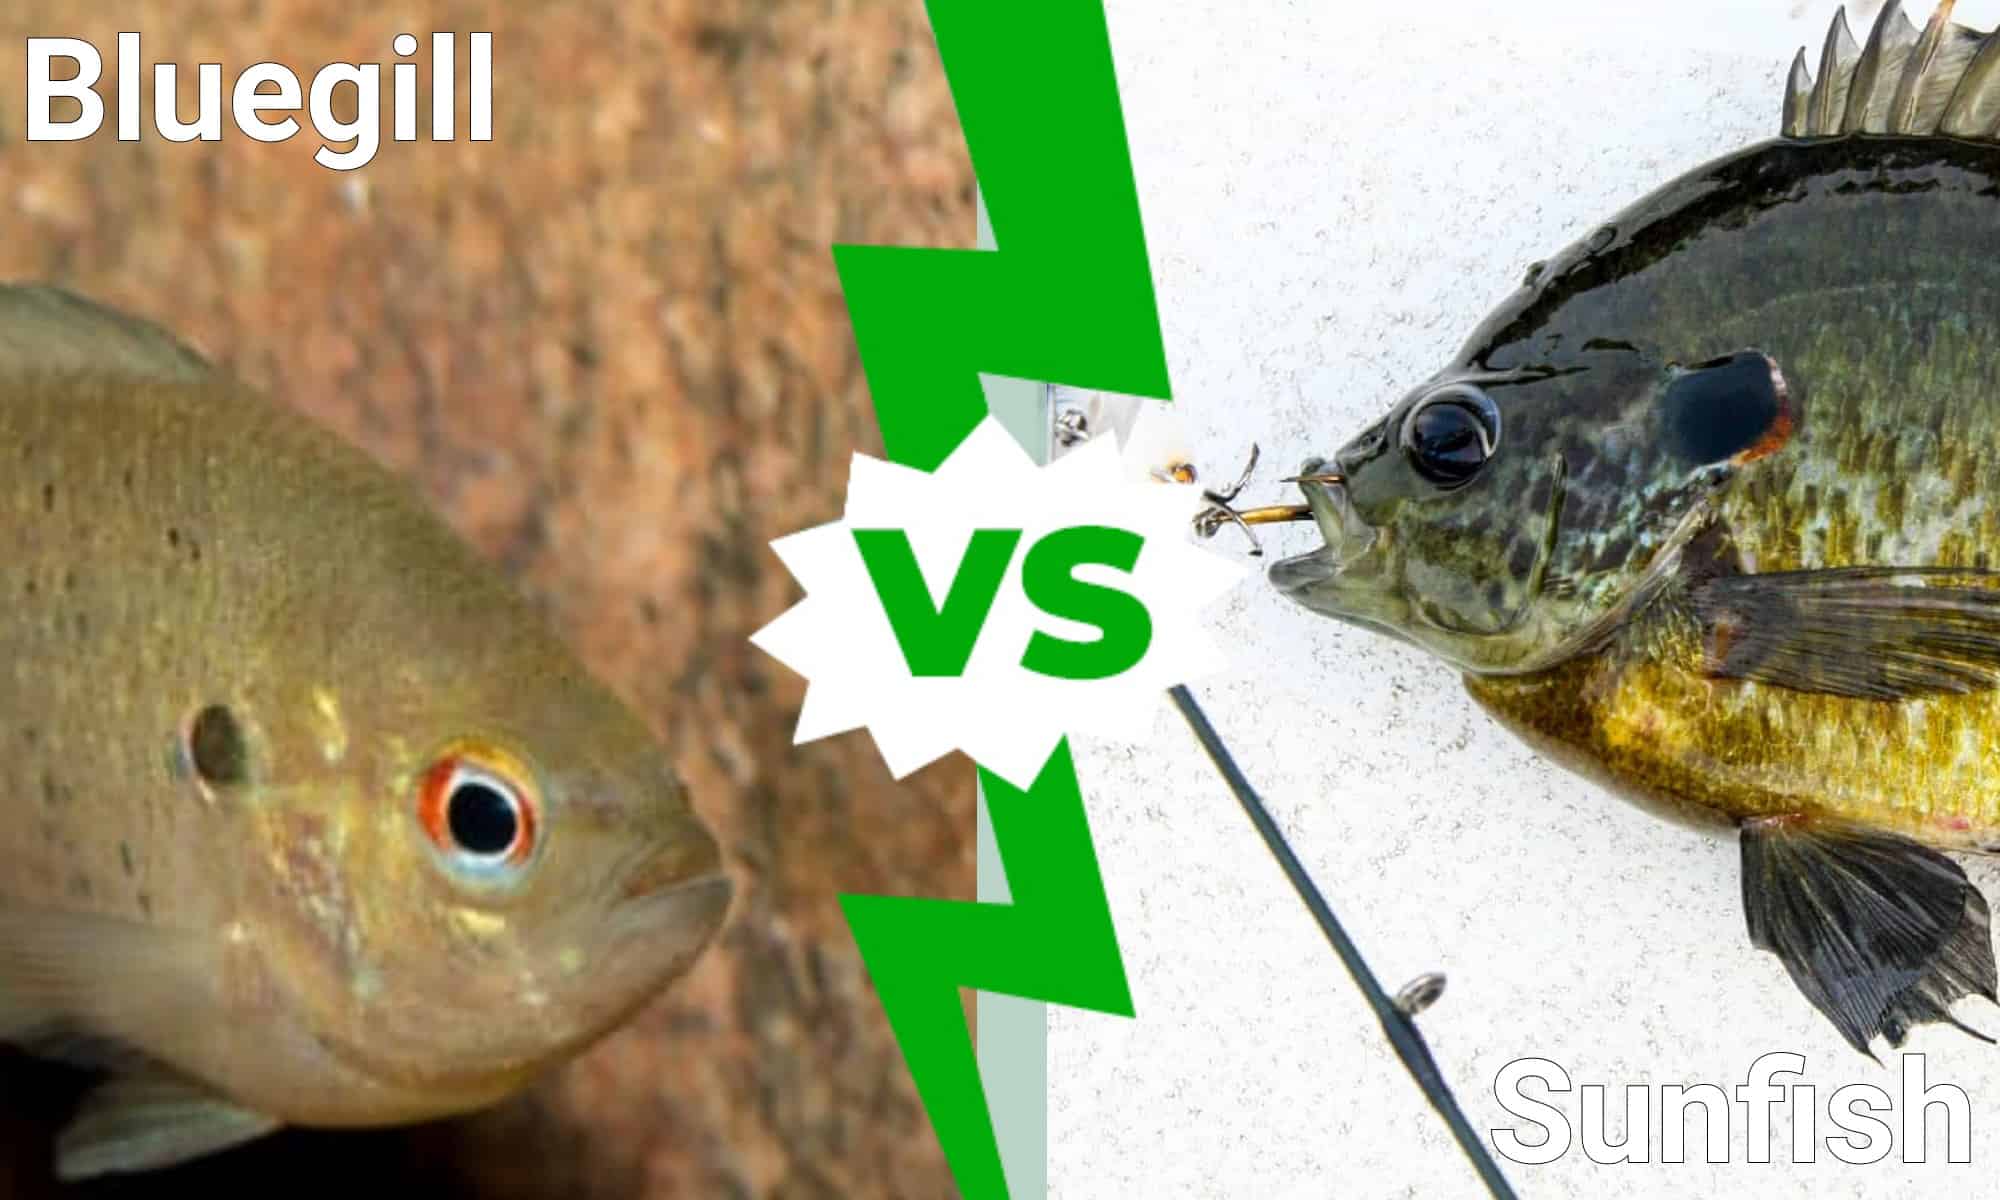 redbreast sunfish vs bluegill